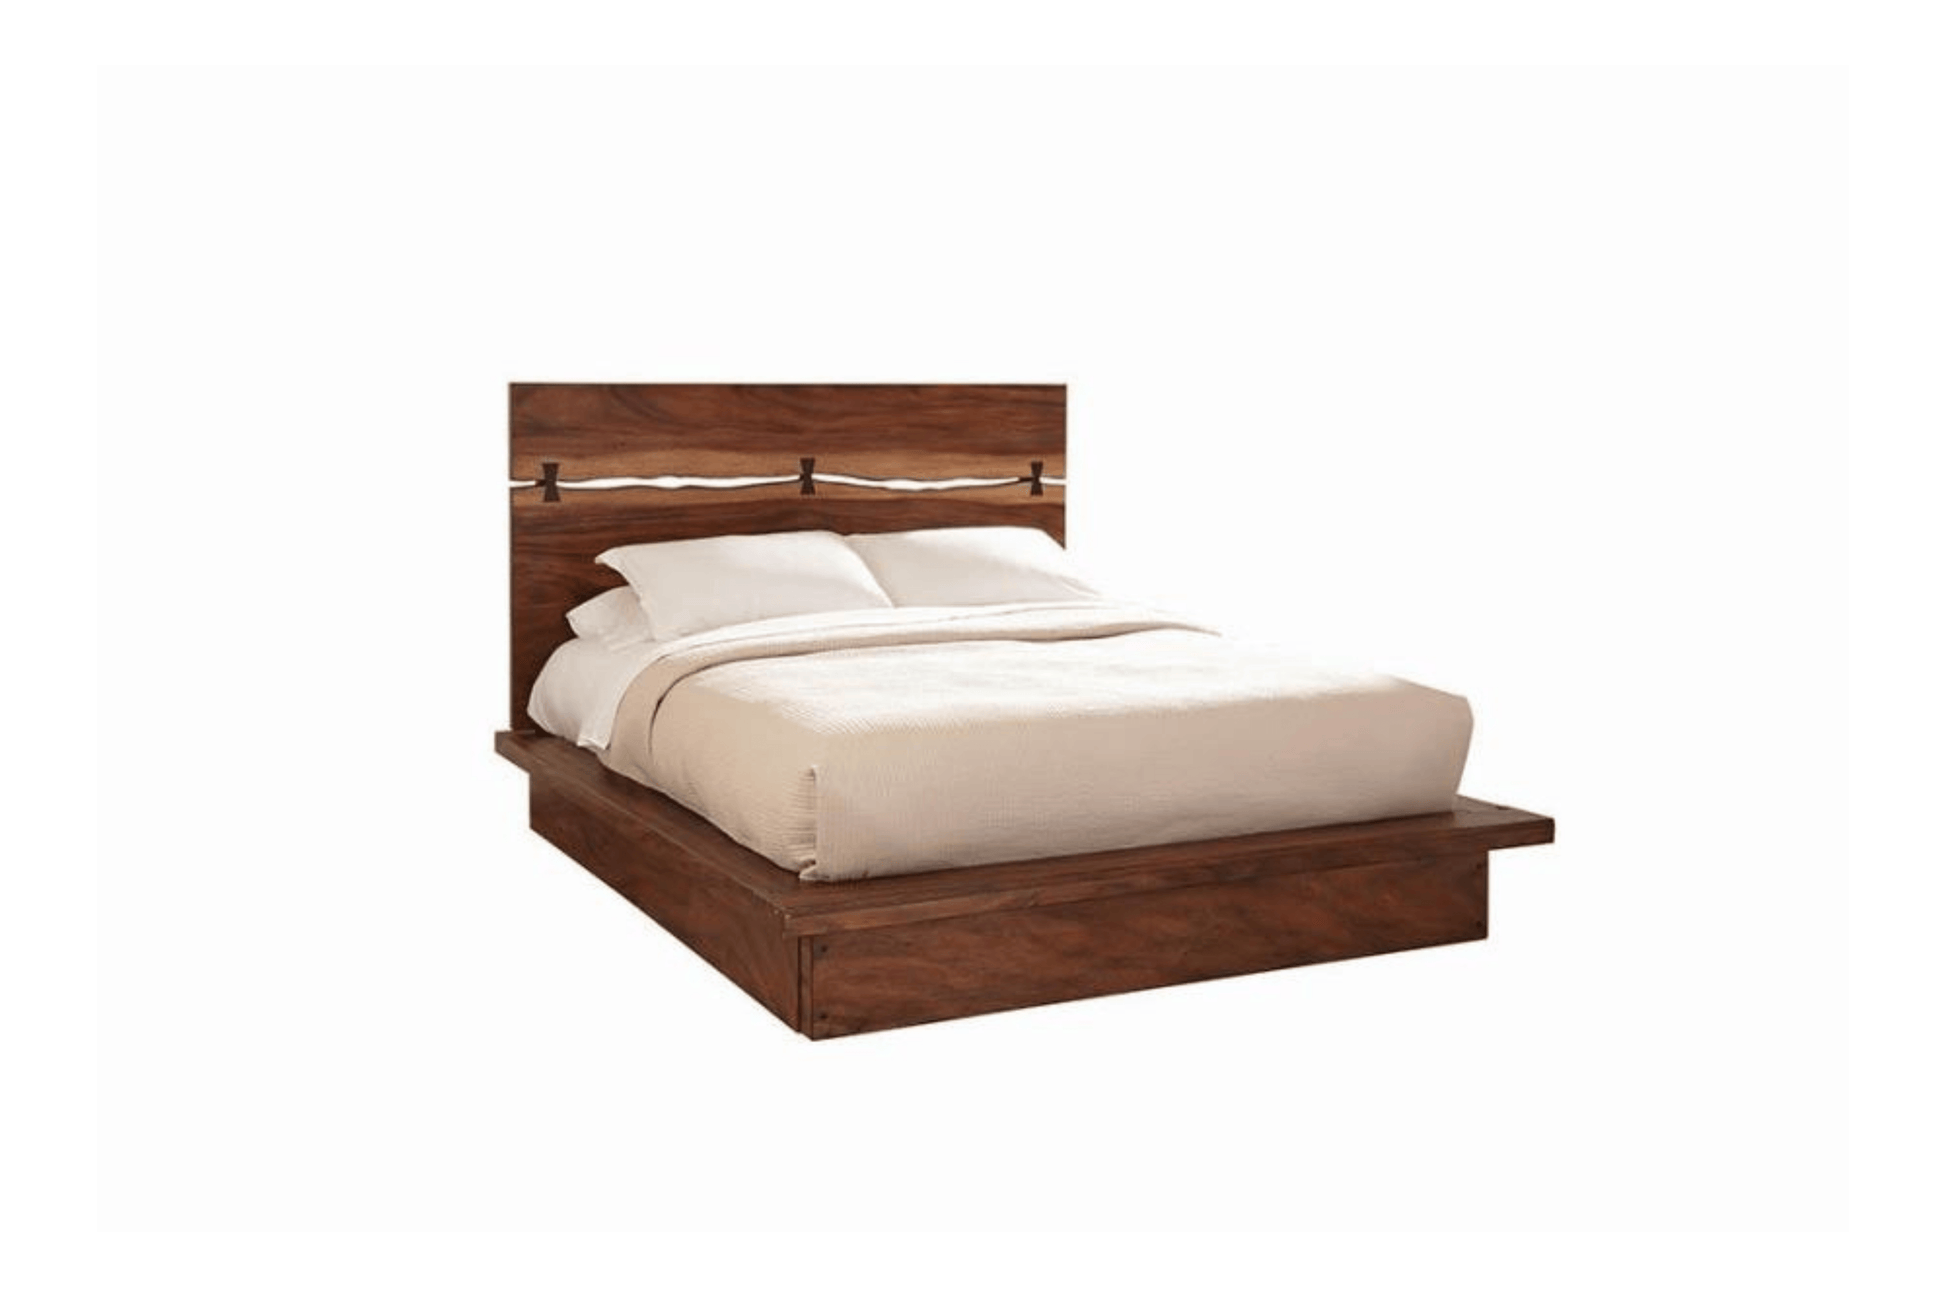 Winslow Eastern Bed Smokey Walnut and Coffee Bean SKU: 223250 - Venini Furniture 